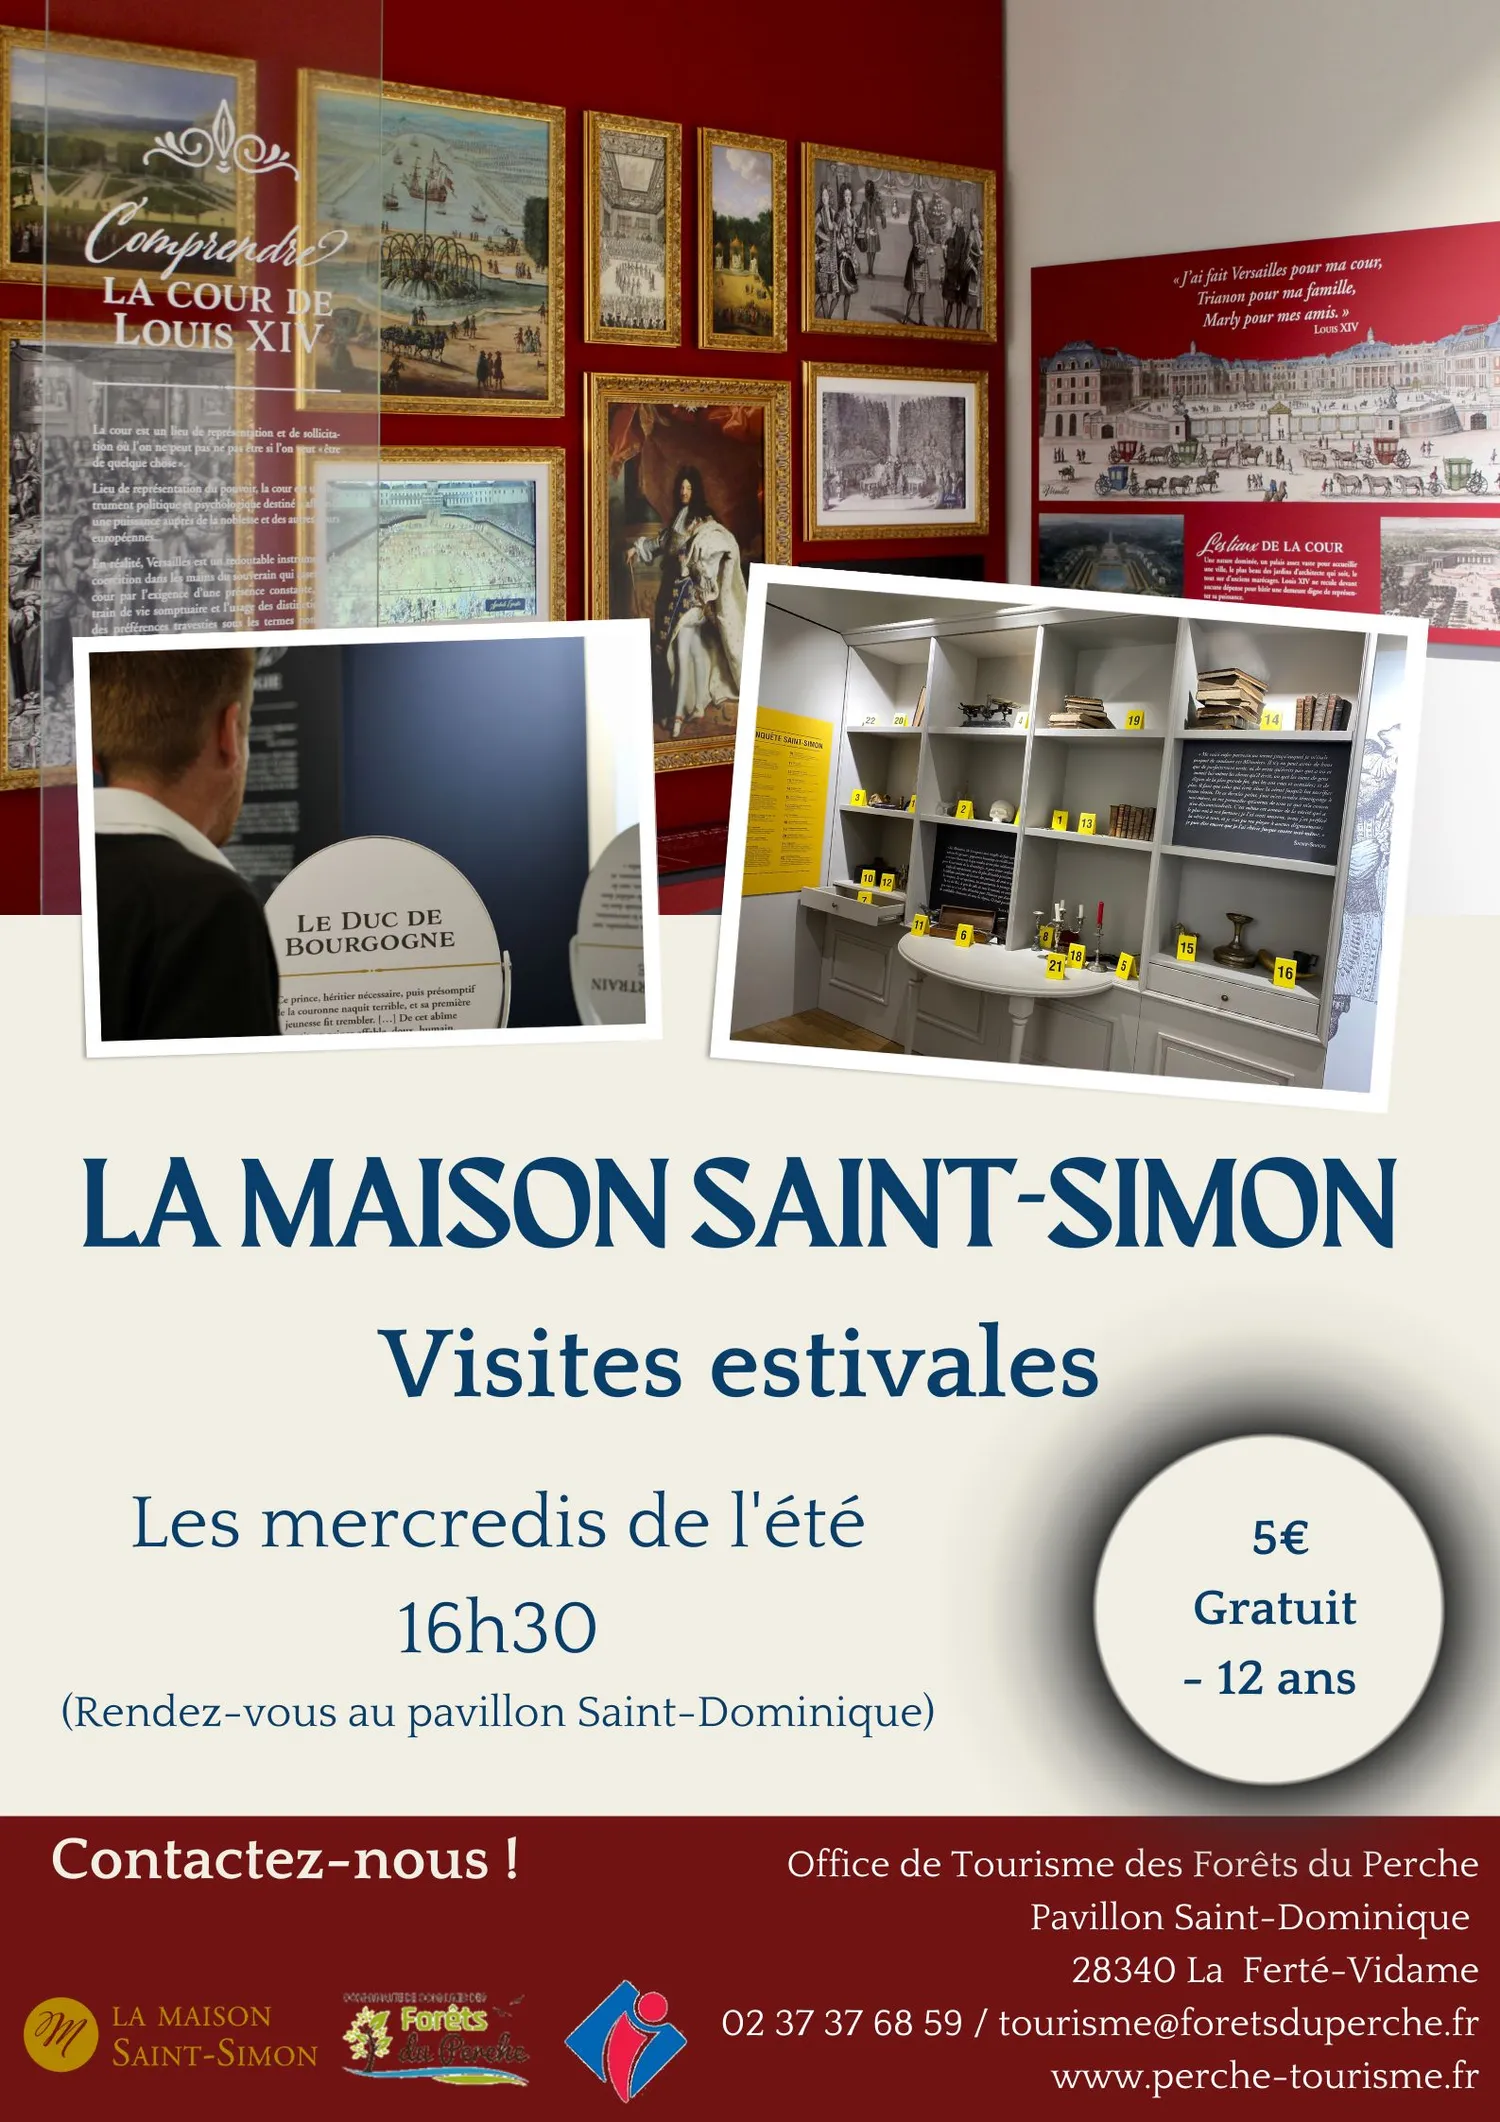 Image qui illustre: Maison Saint-simon à La Ferté-Vidame - 0